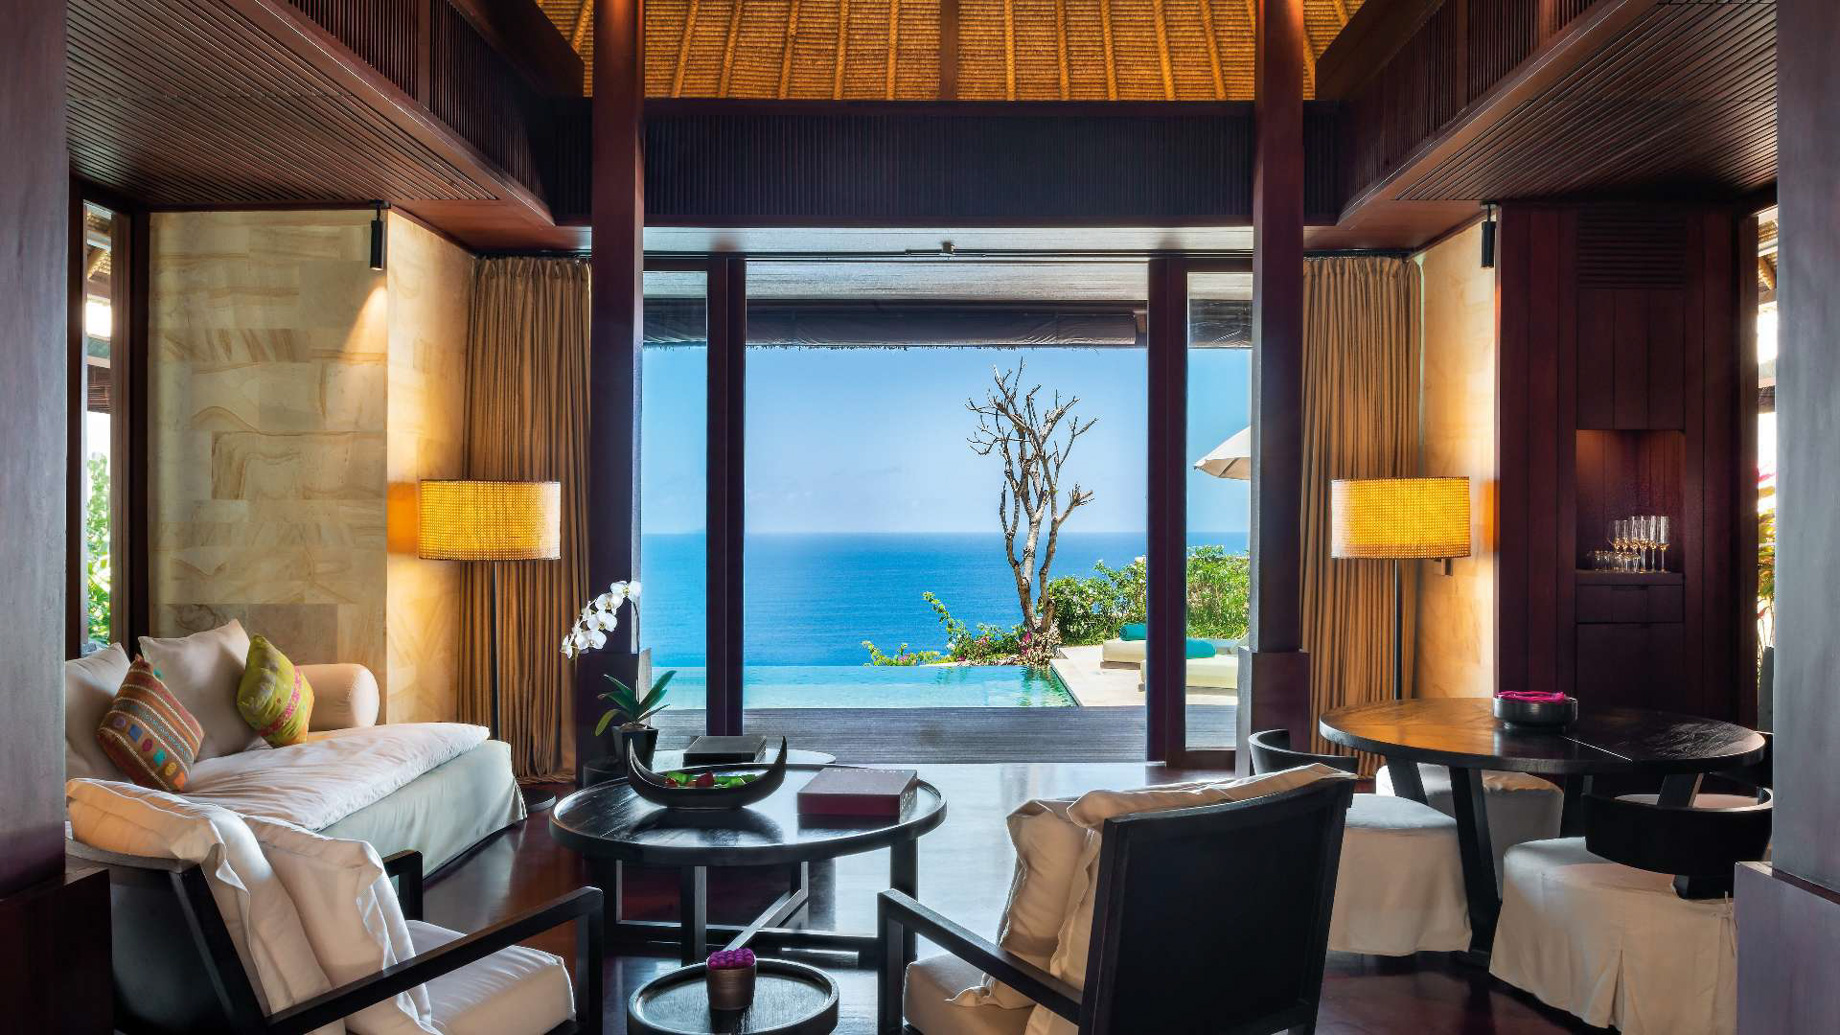 Bvlgari Resort Bali - Uluwatu, Bali, Indonesia - Ocean Cliff Villa Living Room Pool Deck Ocean View